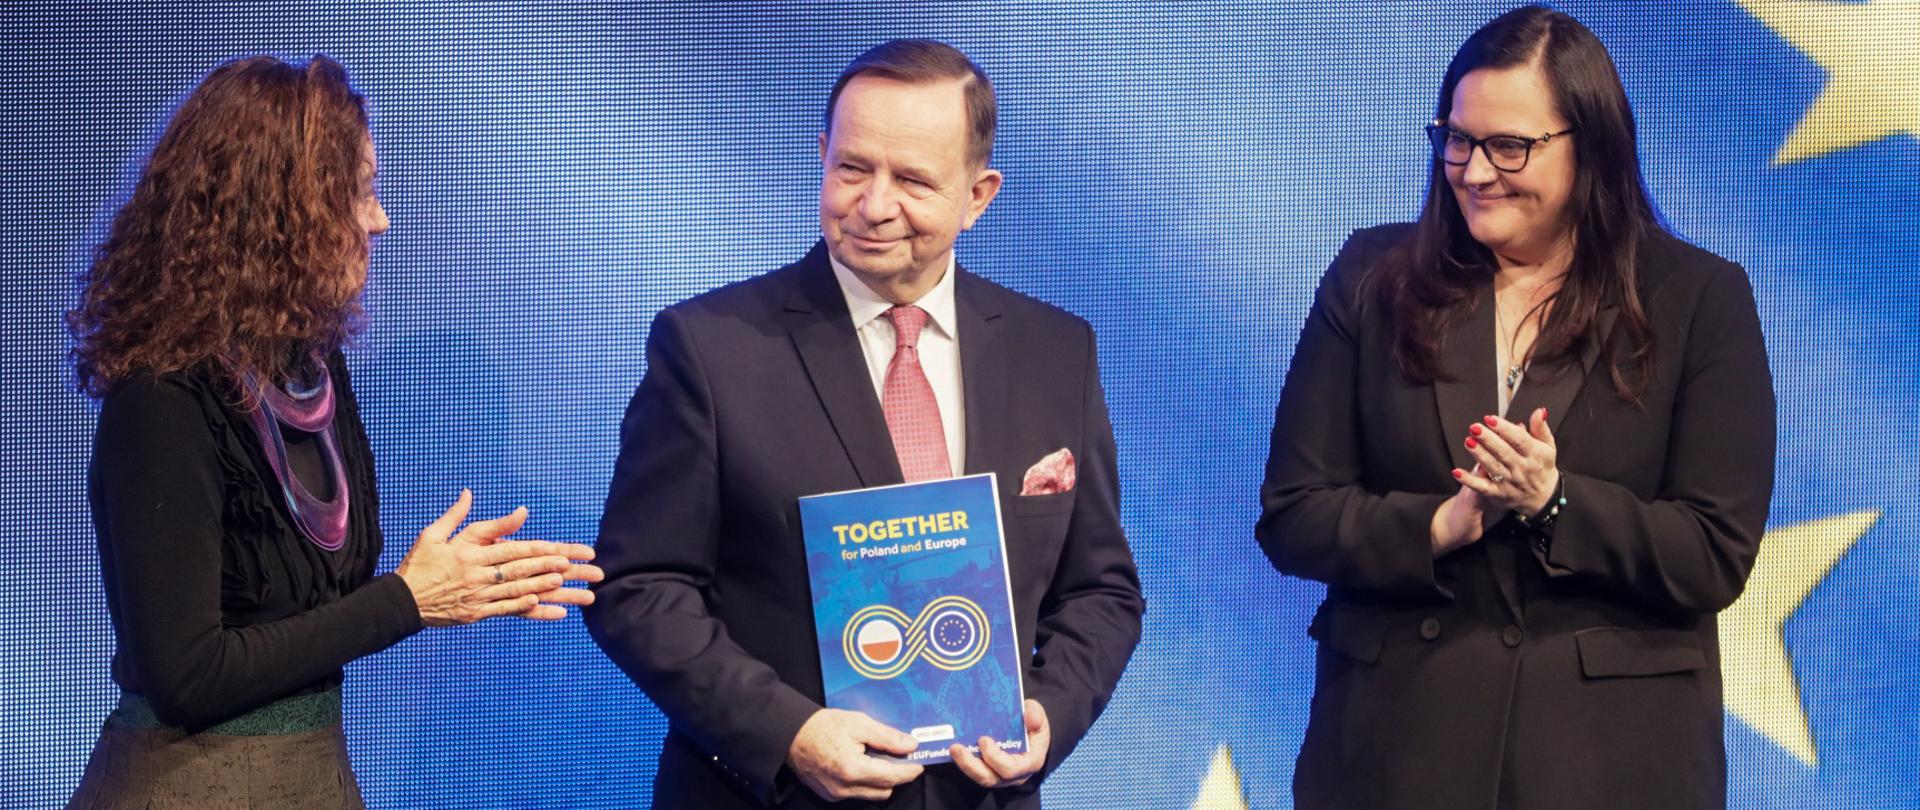 Trzy osoby na scenie. Od lewej dyrektor Cinzia Masina, marszałek Władysław Ortyl i wiceminister Małgorzata Jarosińska-Jedynak. Mężczyzna trzyma w ręku dokument.